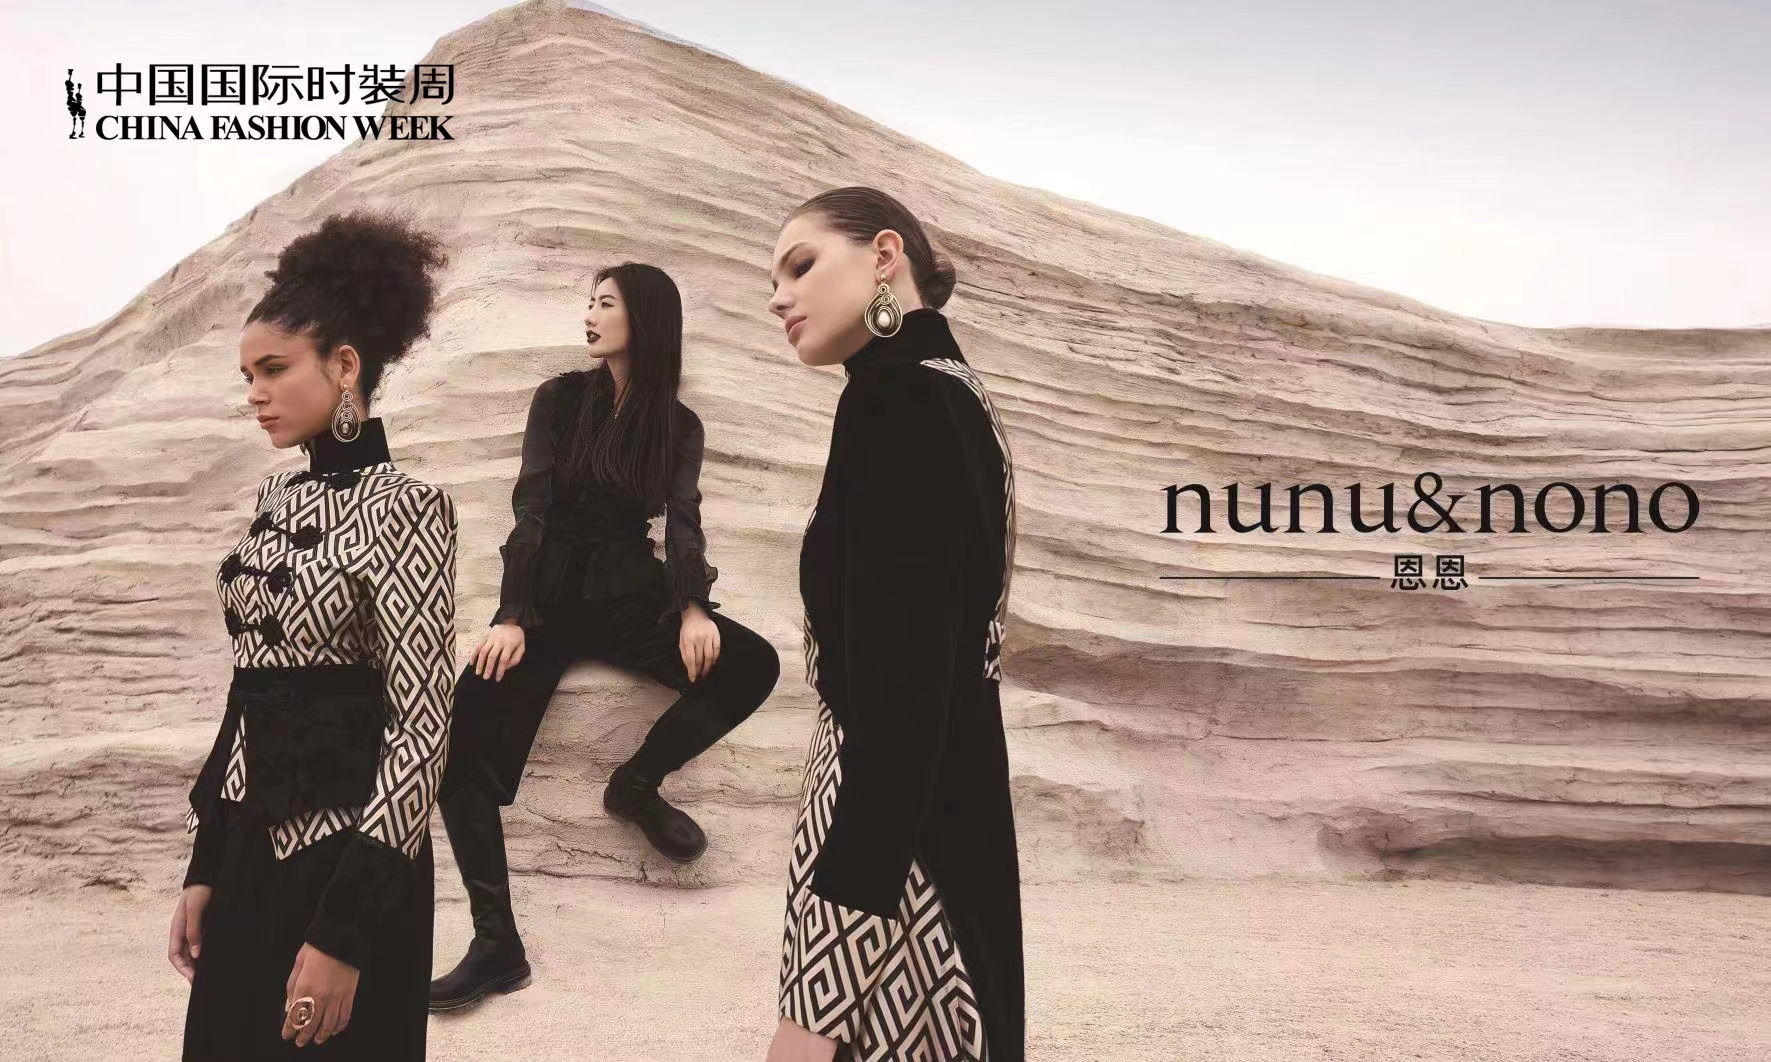 原创设计师张恩携高级成衣品牌nunu&nono首次亮相中国国际时装周